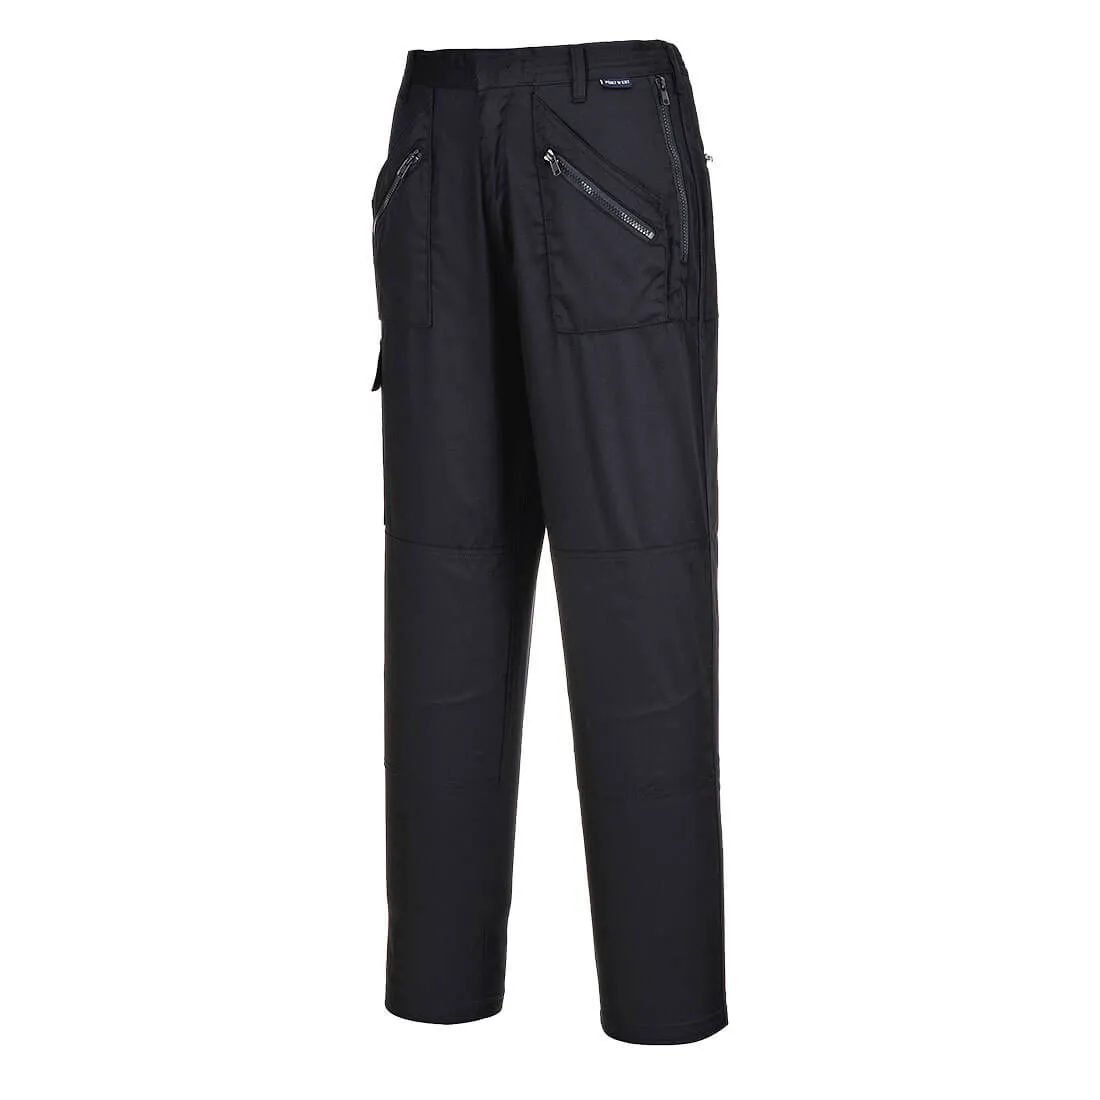 Portwest Ladies S687 Action Trousers - Black, 2XL, 31"